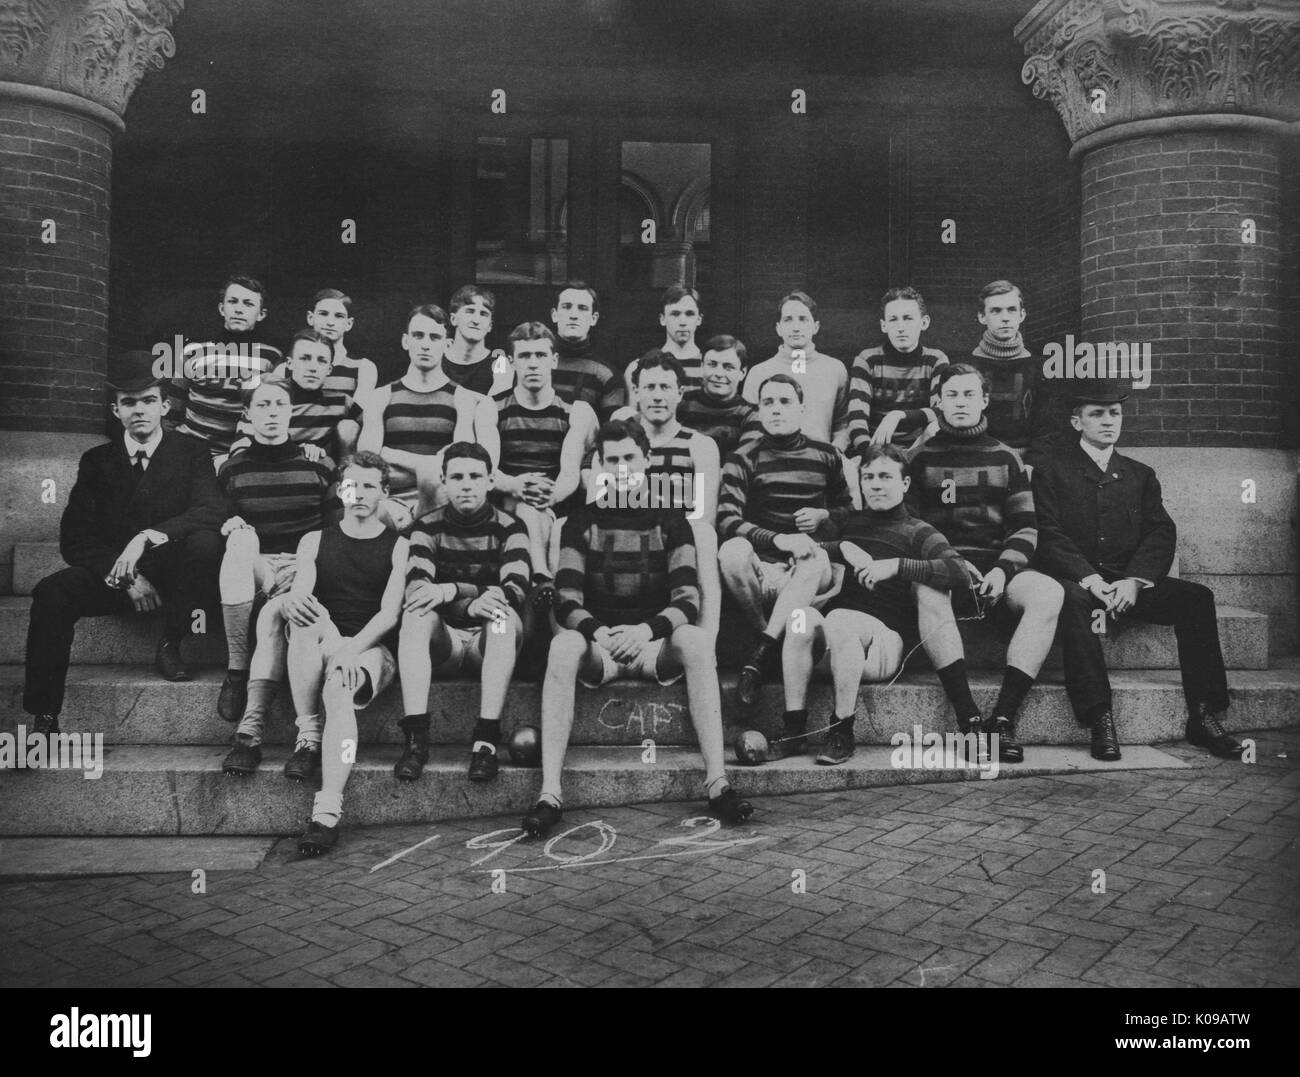 Fotografia di gruppo, la via e il team del settore è insediato in un ritratto formale sui gradini nel loro team di uniformi, '1902' scritto in gesso sulla terra davanti, 1902. Foto Stock